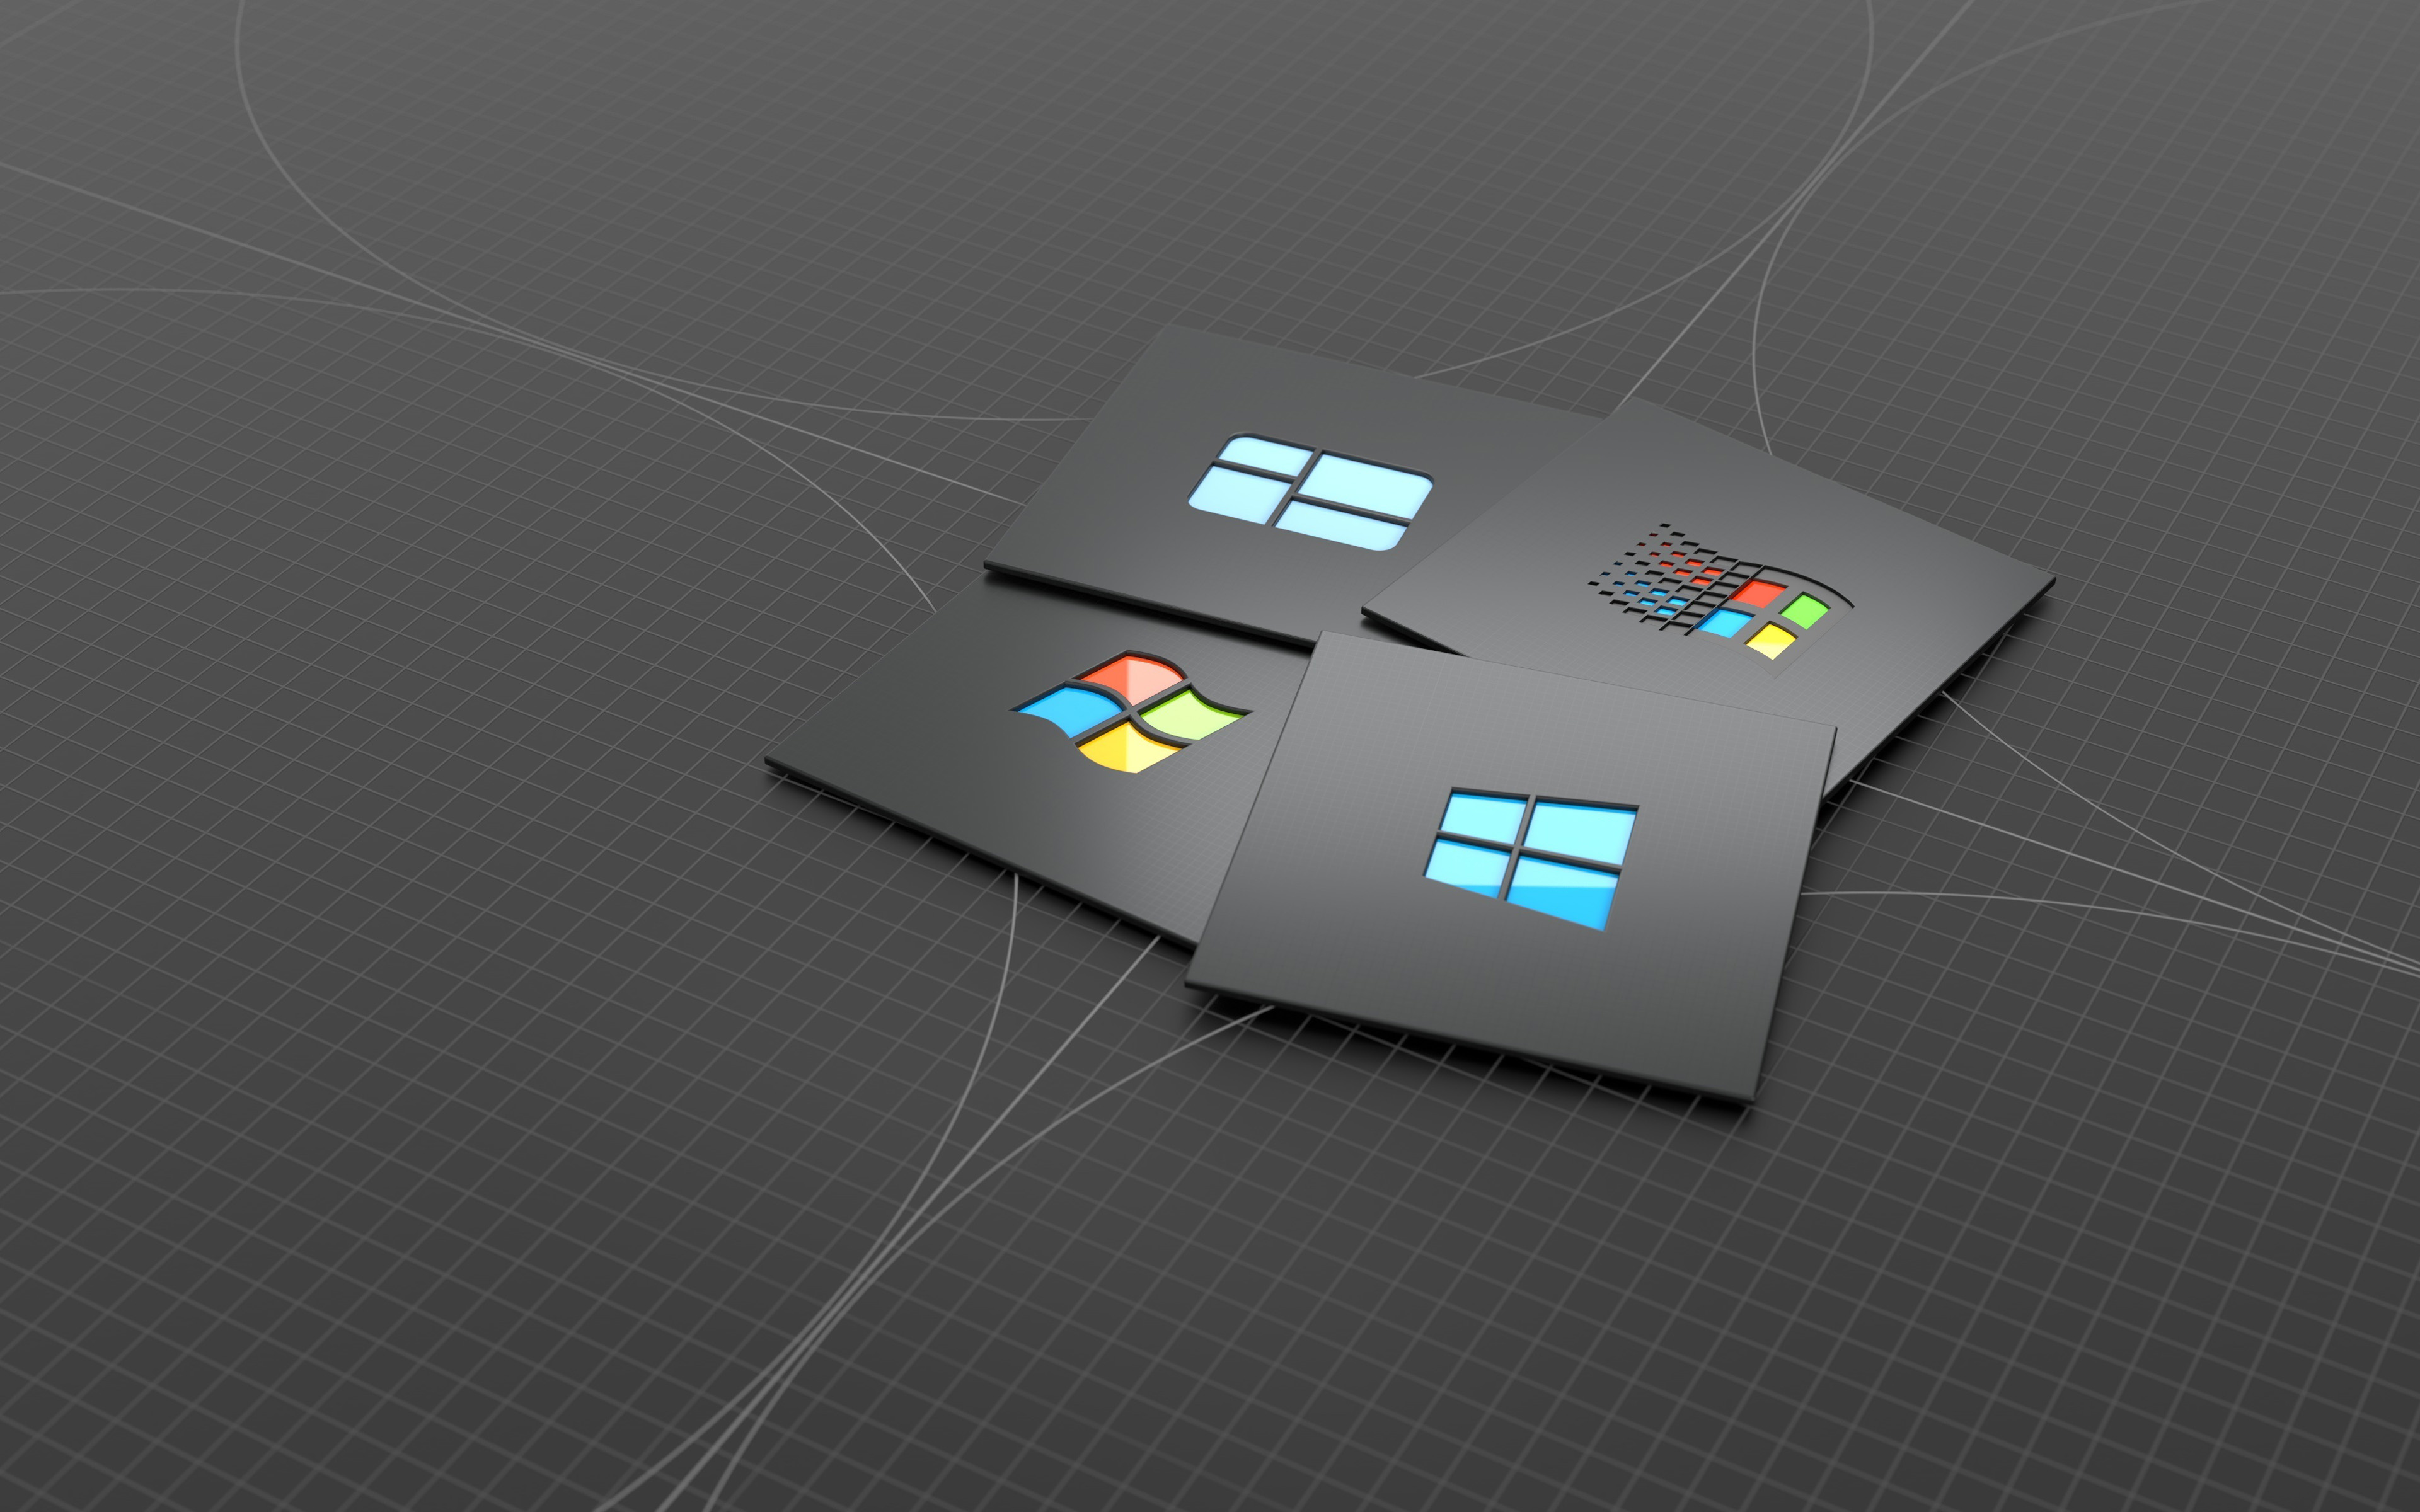 Tải ngay hình nền Windows 10 logo với chất lượng 4k và nghệ thuật 3D đẹp mắt cho chiếc máy tính của bạn. Thiết kế tối giản mang lại sự hiện đại và lịch lãm cho không gian làm việc của bạn, đồng thời làm tăng hiệu suất và cảm giác sảng khoái.